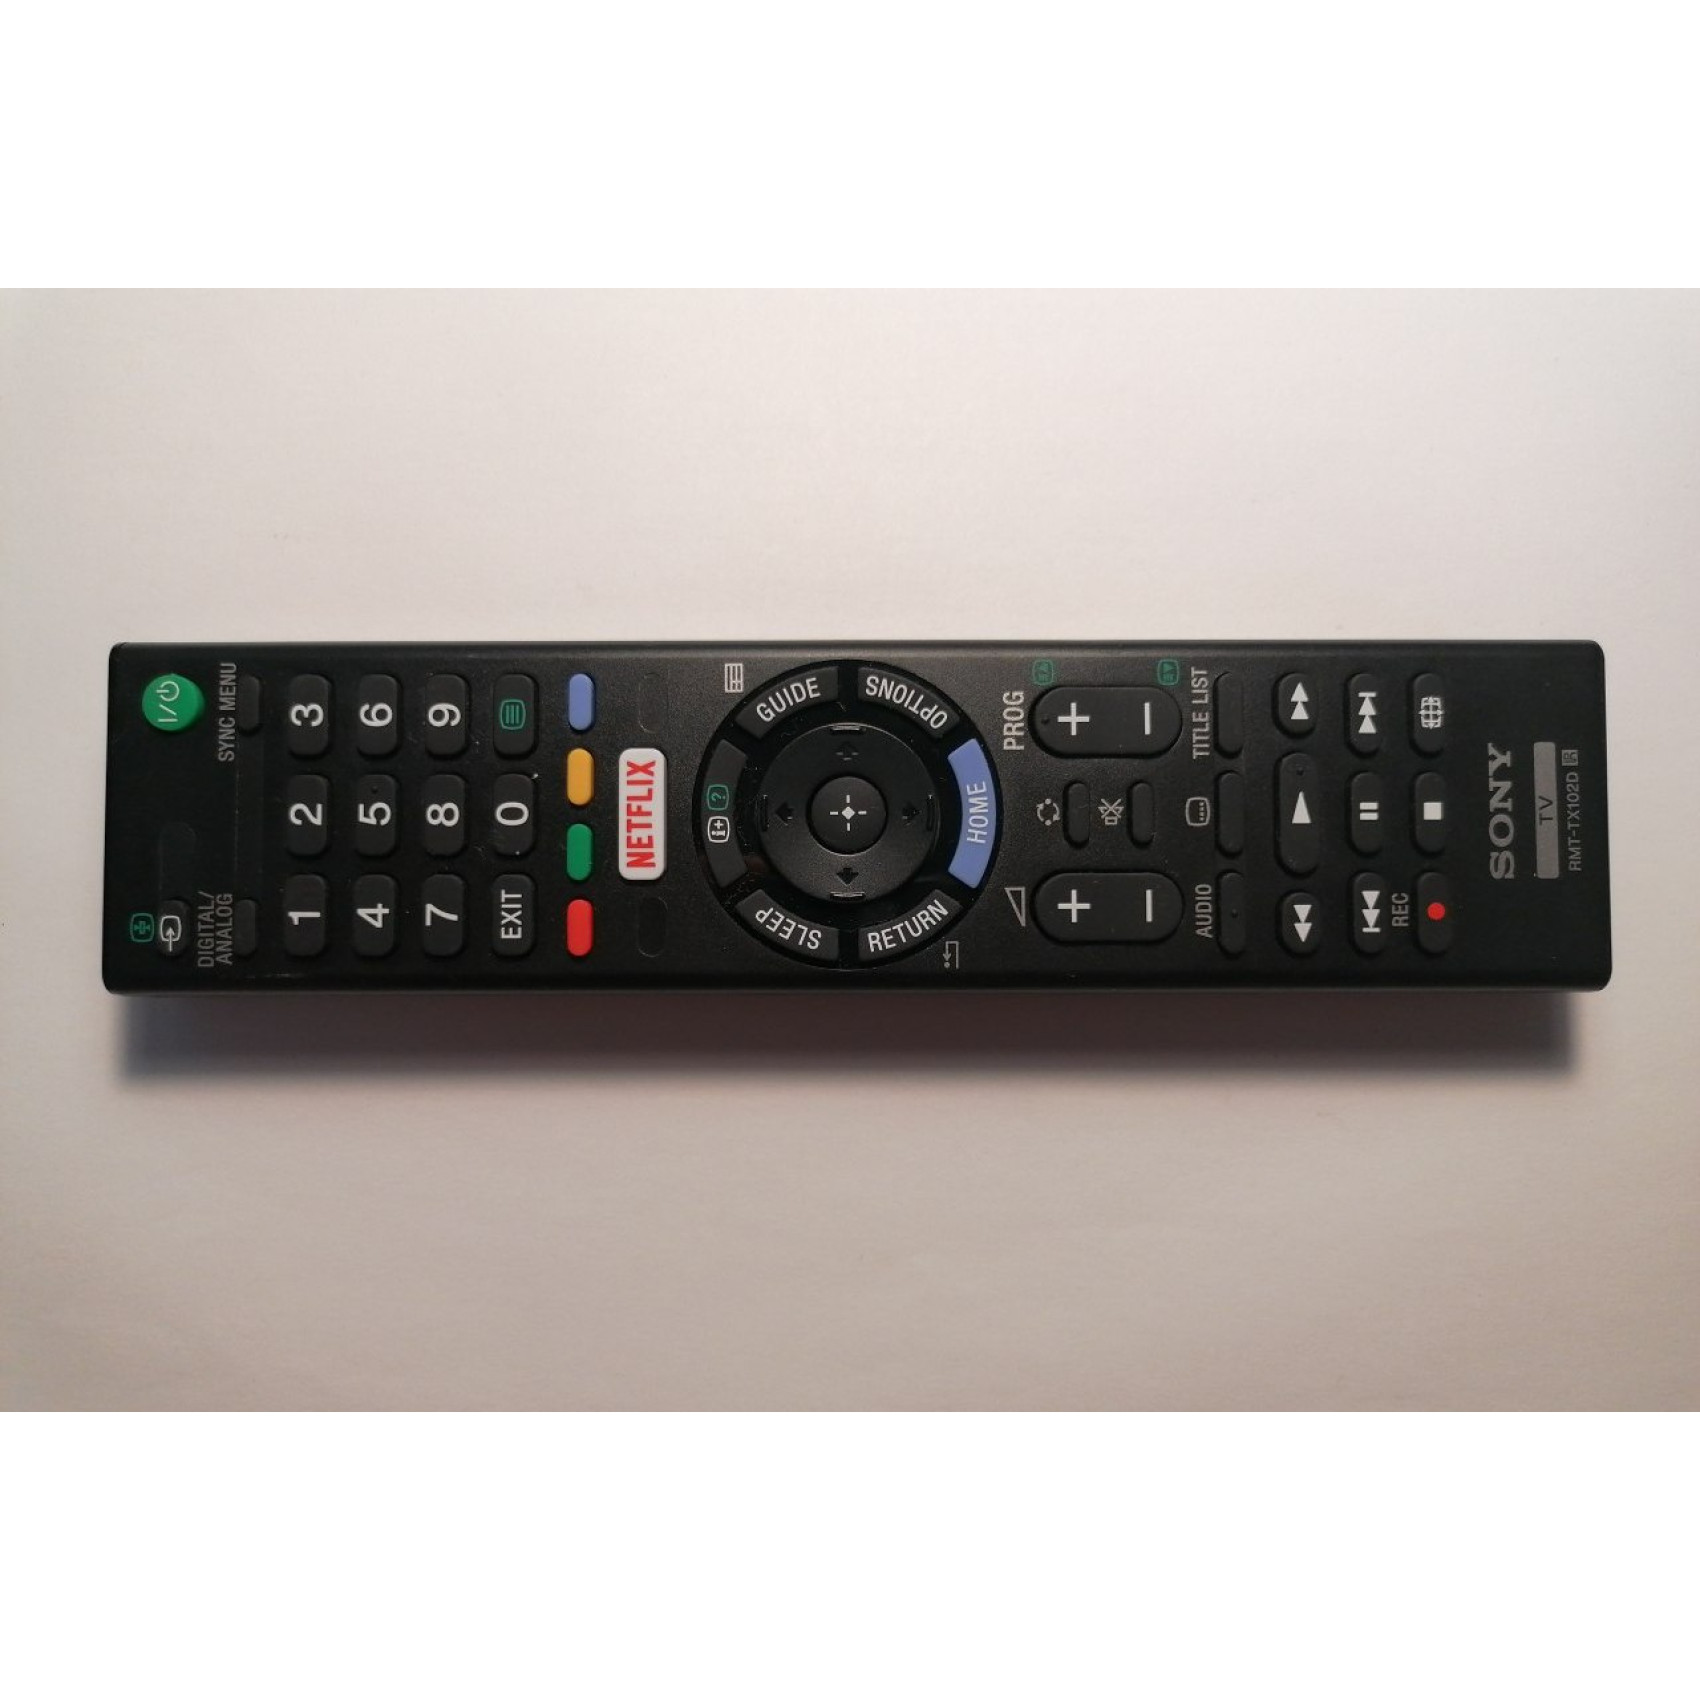 Original Sony RMT-TX102D P14367-C03 remote control Smart TV